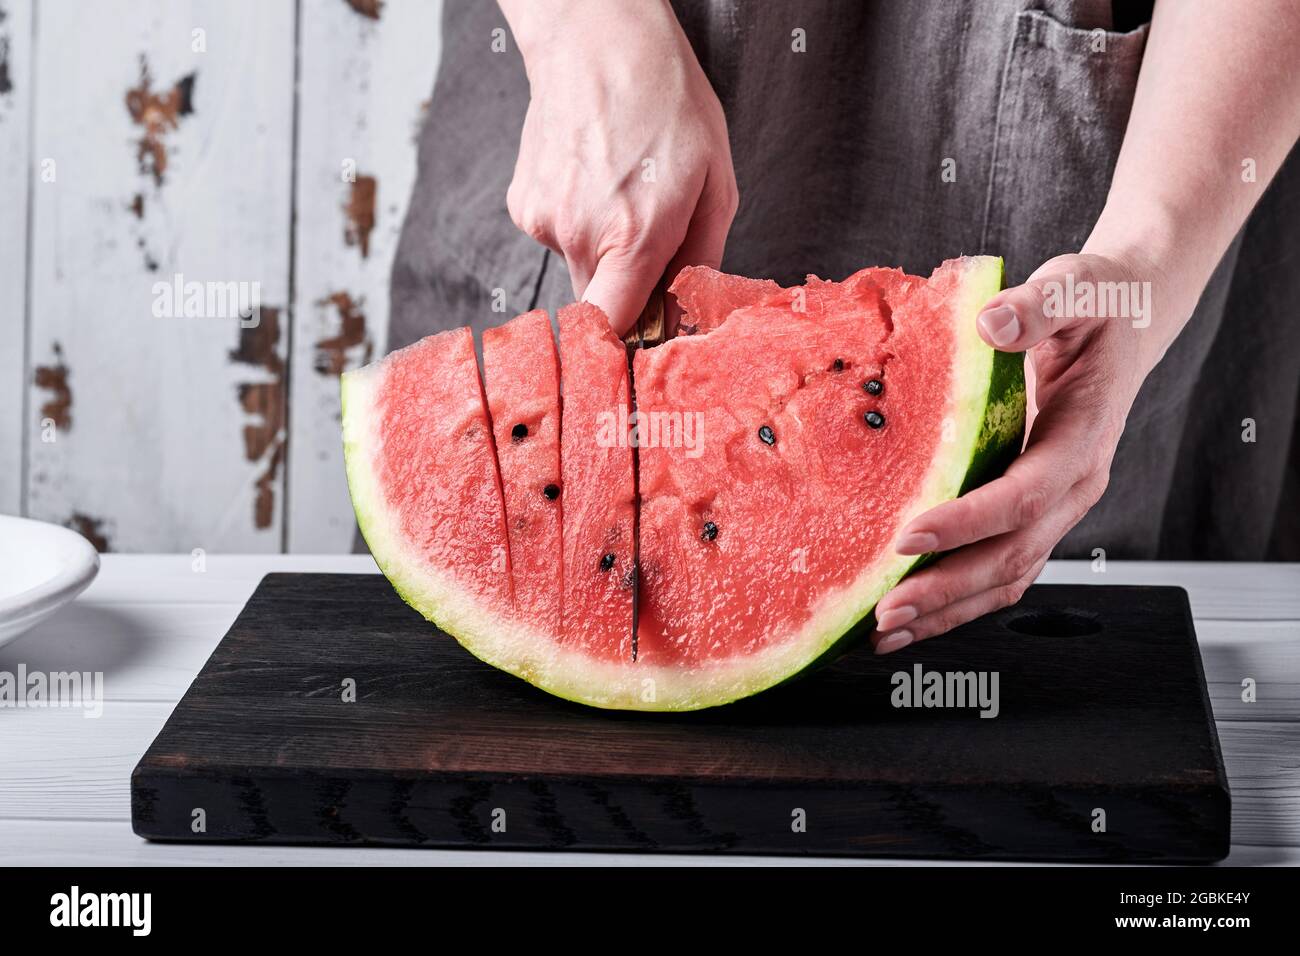 Weibliche Hände schneiden vor dem Hintergrund einer häuslichen Umgebung eine Wassermelone in Stücke. Selektiver Fokus. Stockfoto